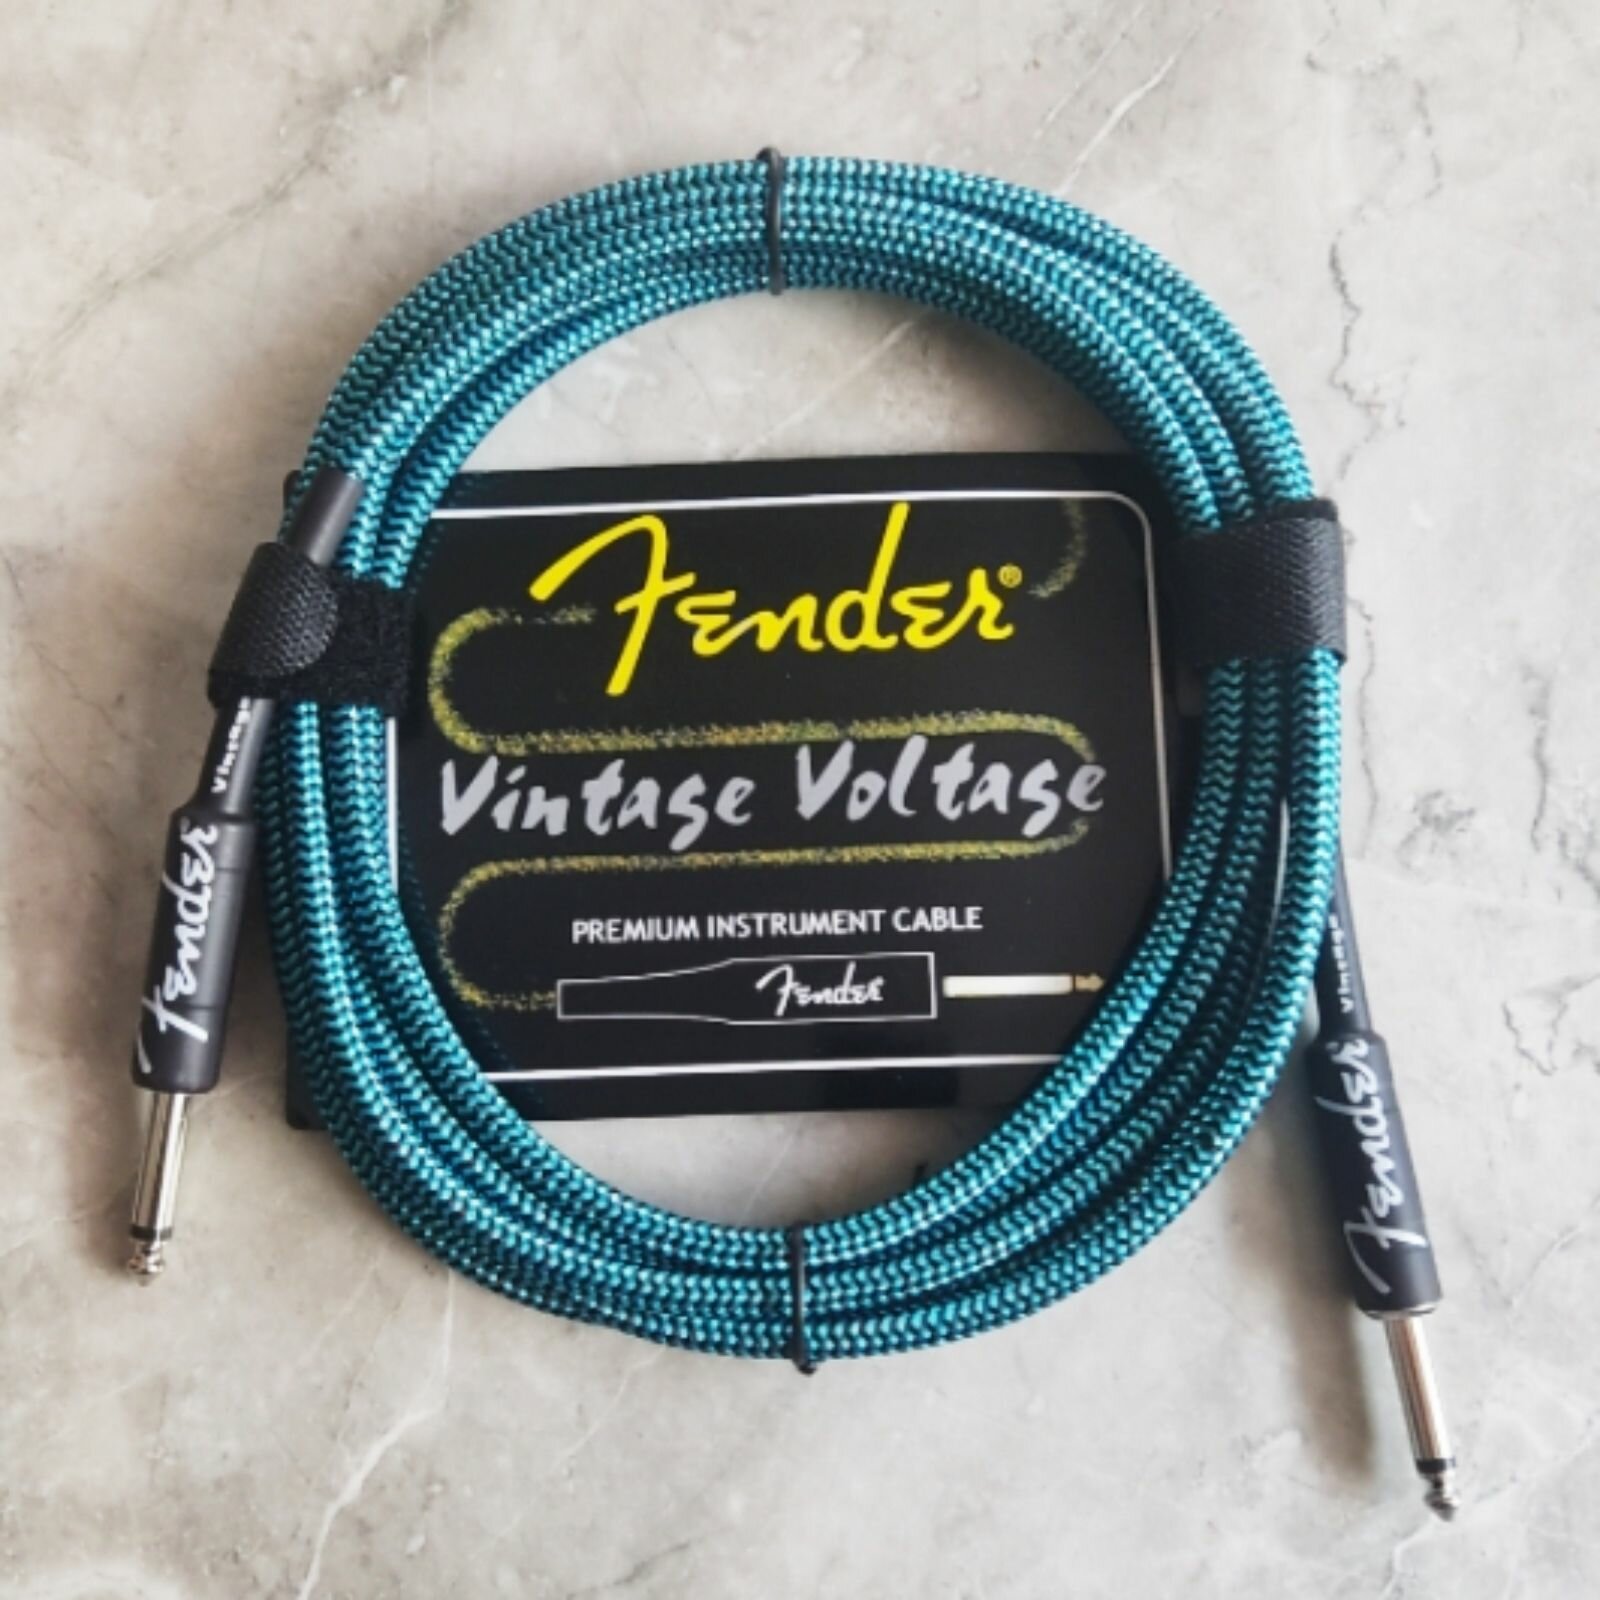 Премиум гитарный кабель 3 метра 6.3 jack Fender Vintage Voltage, бирюзовый, шнур для для электрогитары, электроакустической, провод для комбика.